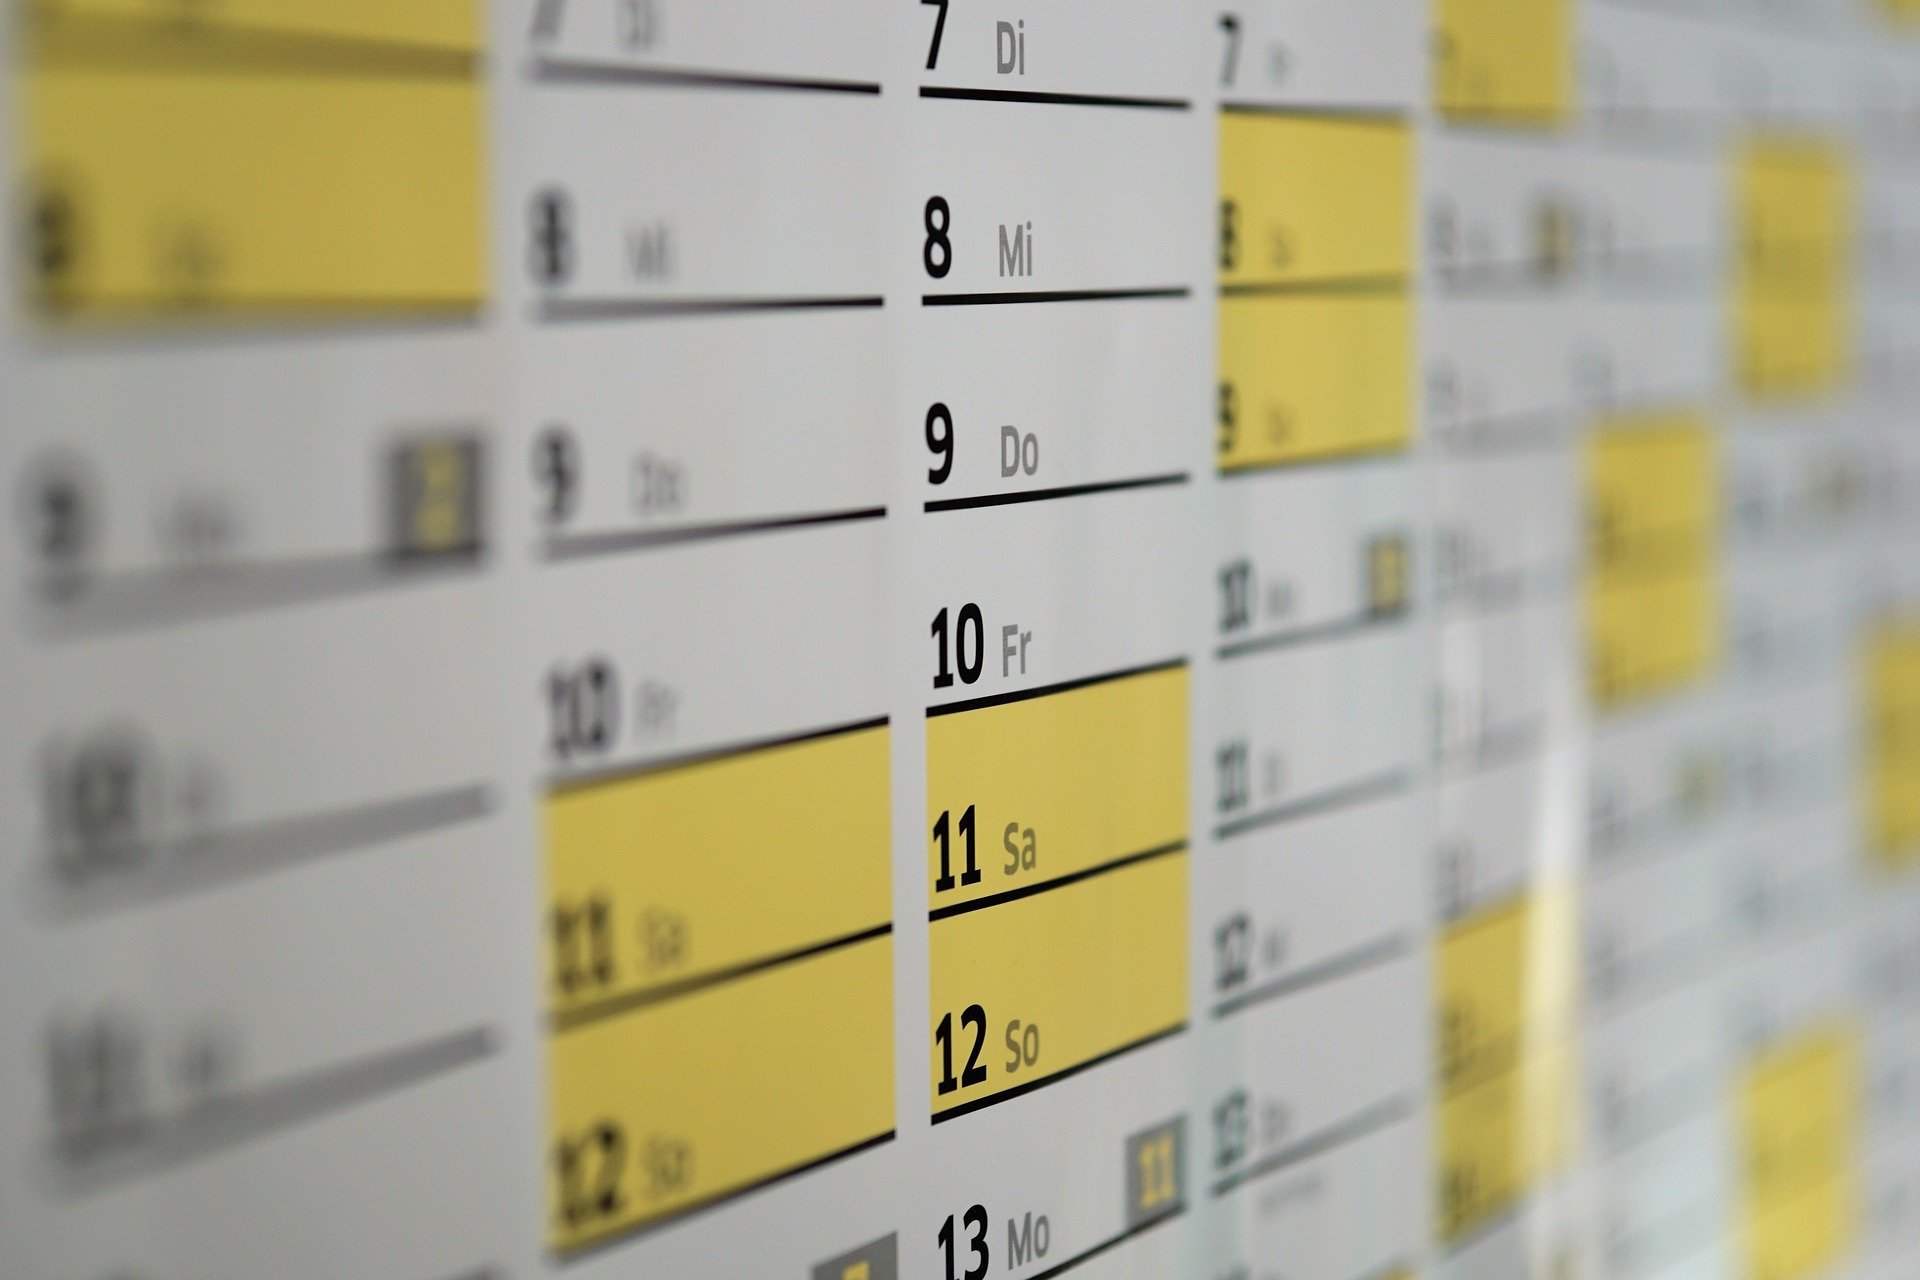 Kalender (c) Bild von Andreas Lischka auf Pixabay